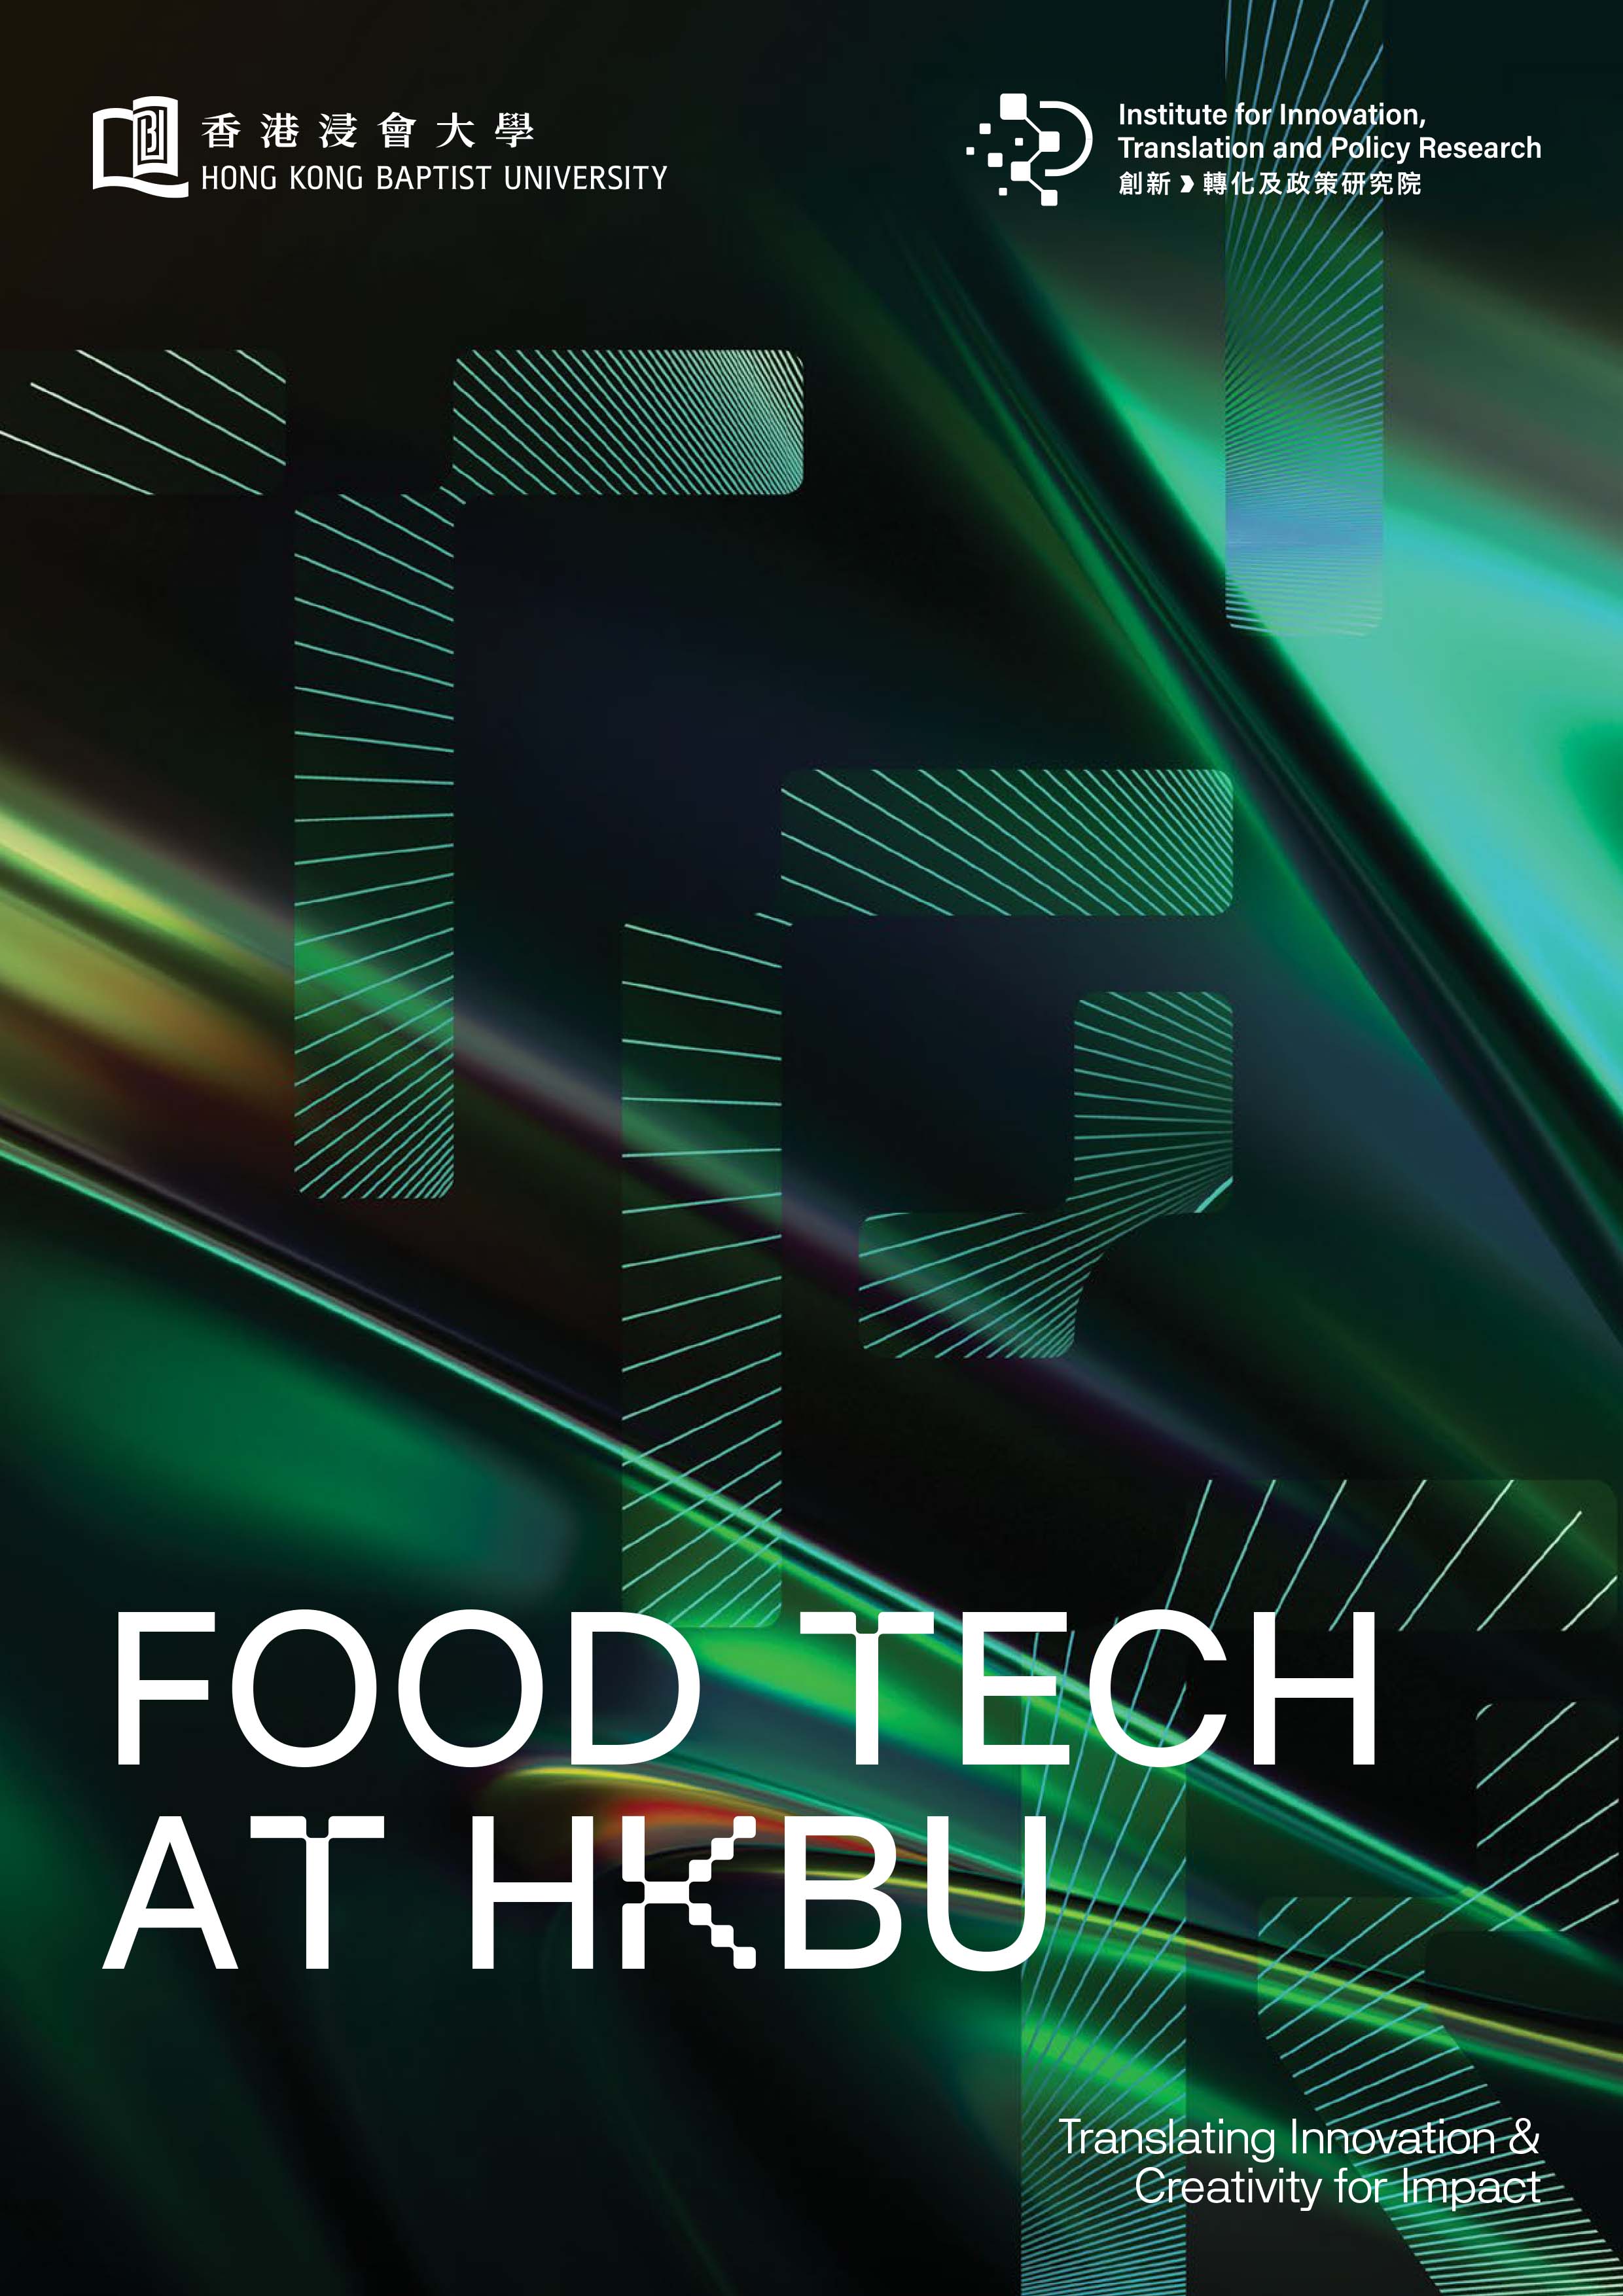 Food Tech at HKBU